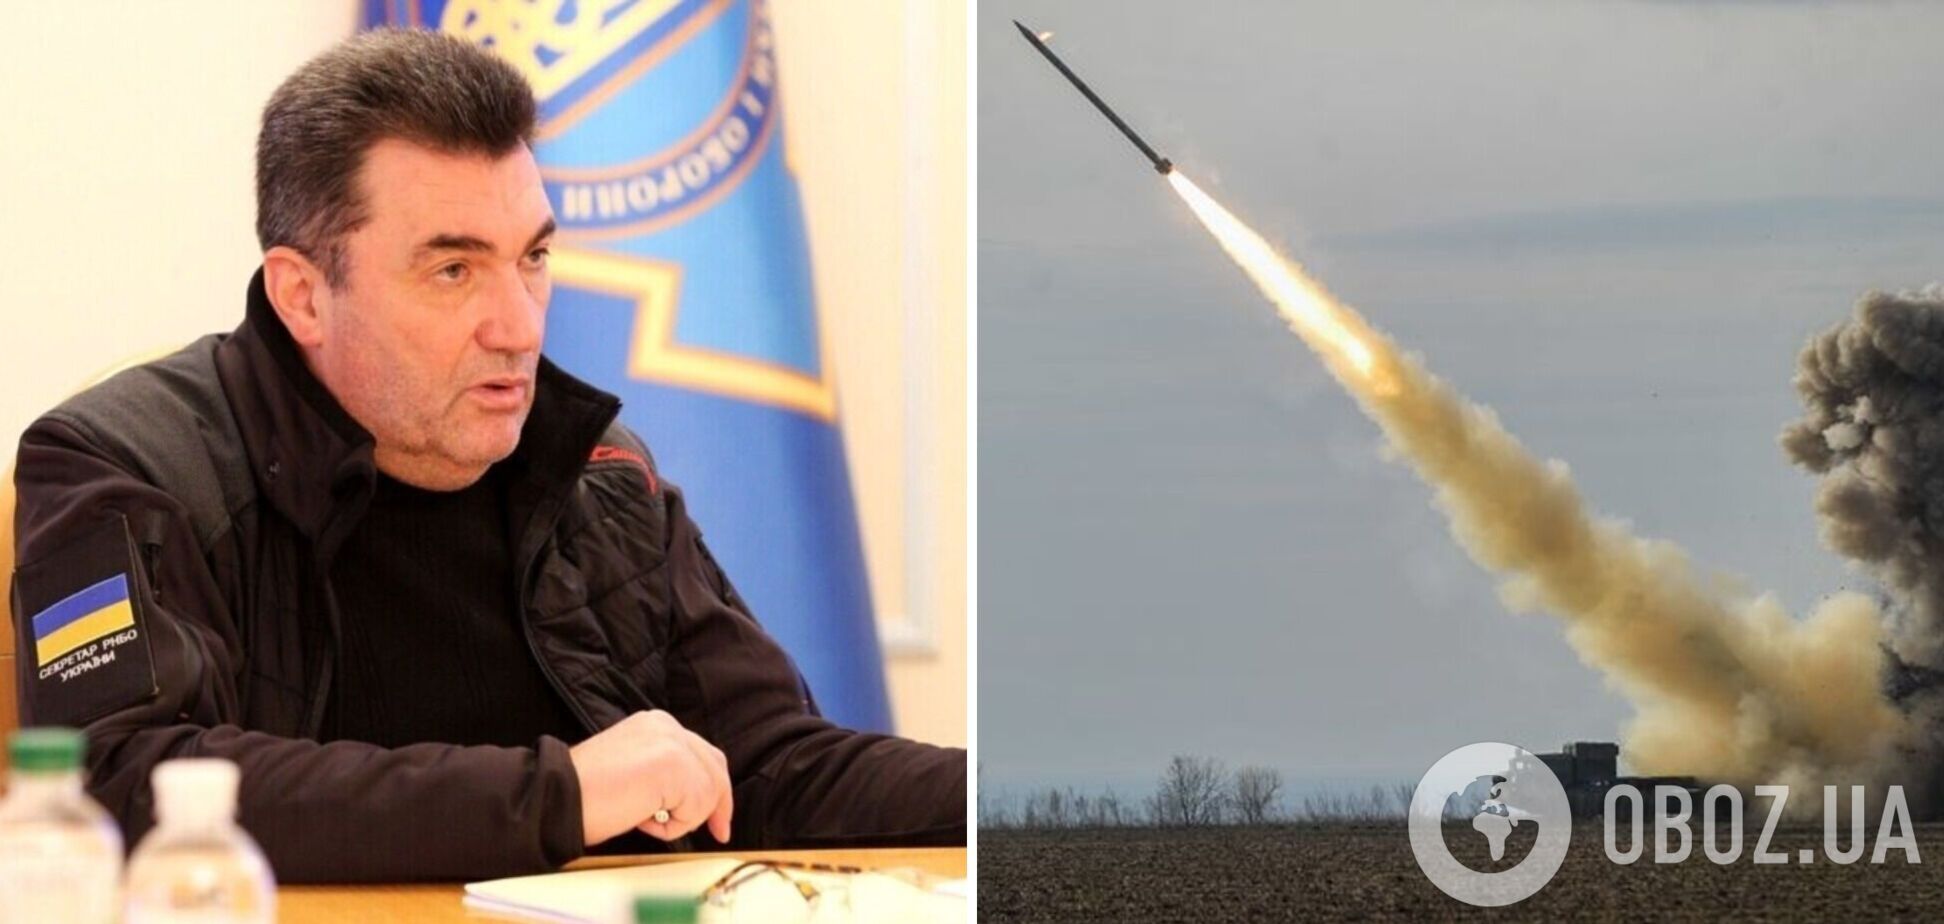 Україна знайшла спосіб, як збирати власні ракети без загрози ударів з боку РФ: Данілов привідкрив таємницю і зробив попередження Кремлю